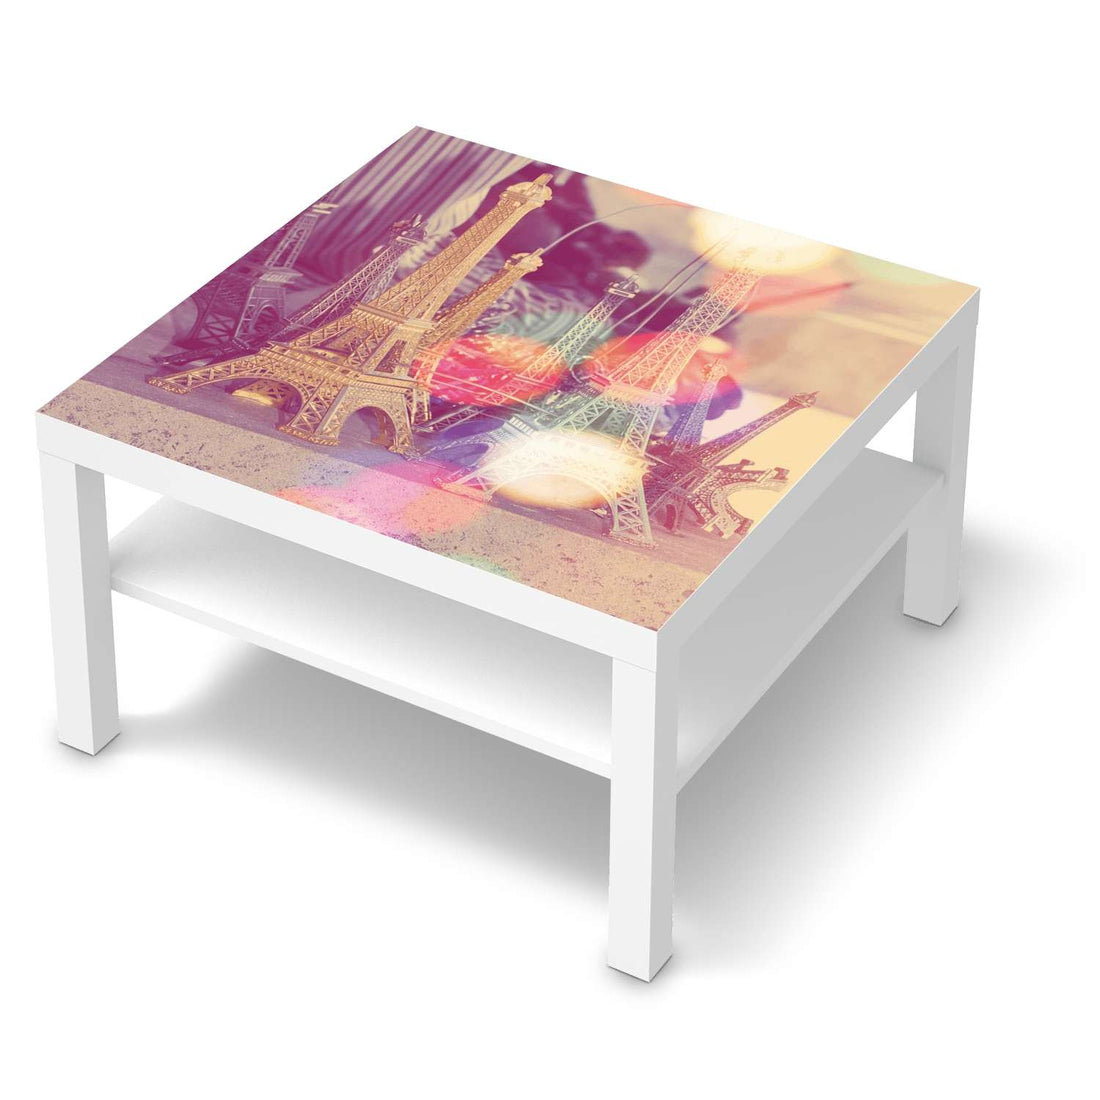 Selbstklebende Folie Paris - IKEA Lack Tisch 78x78 cm - weiss